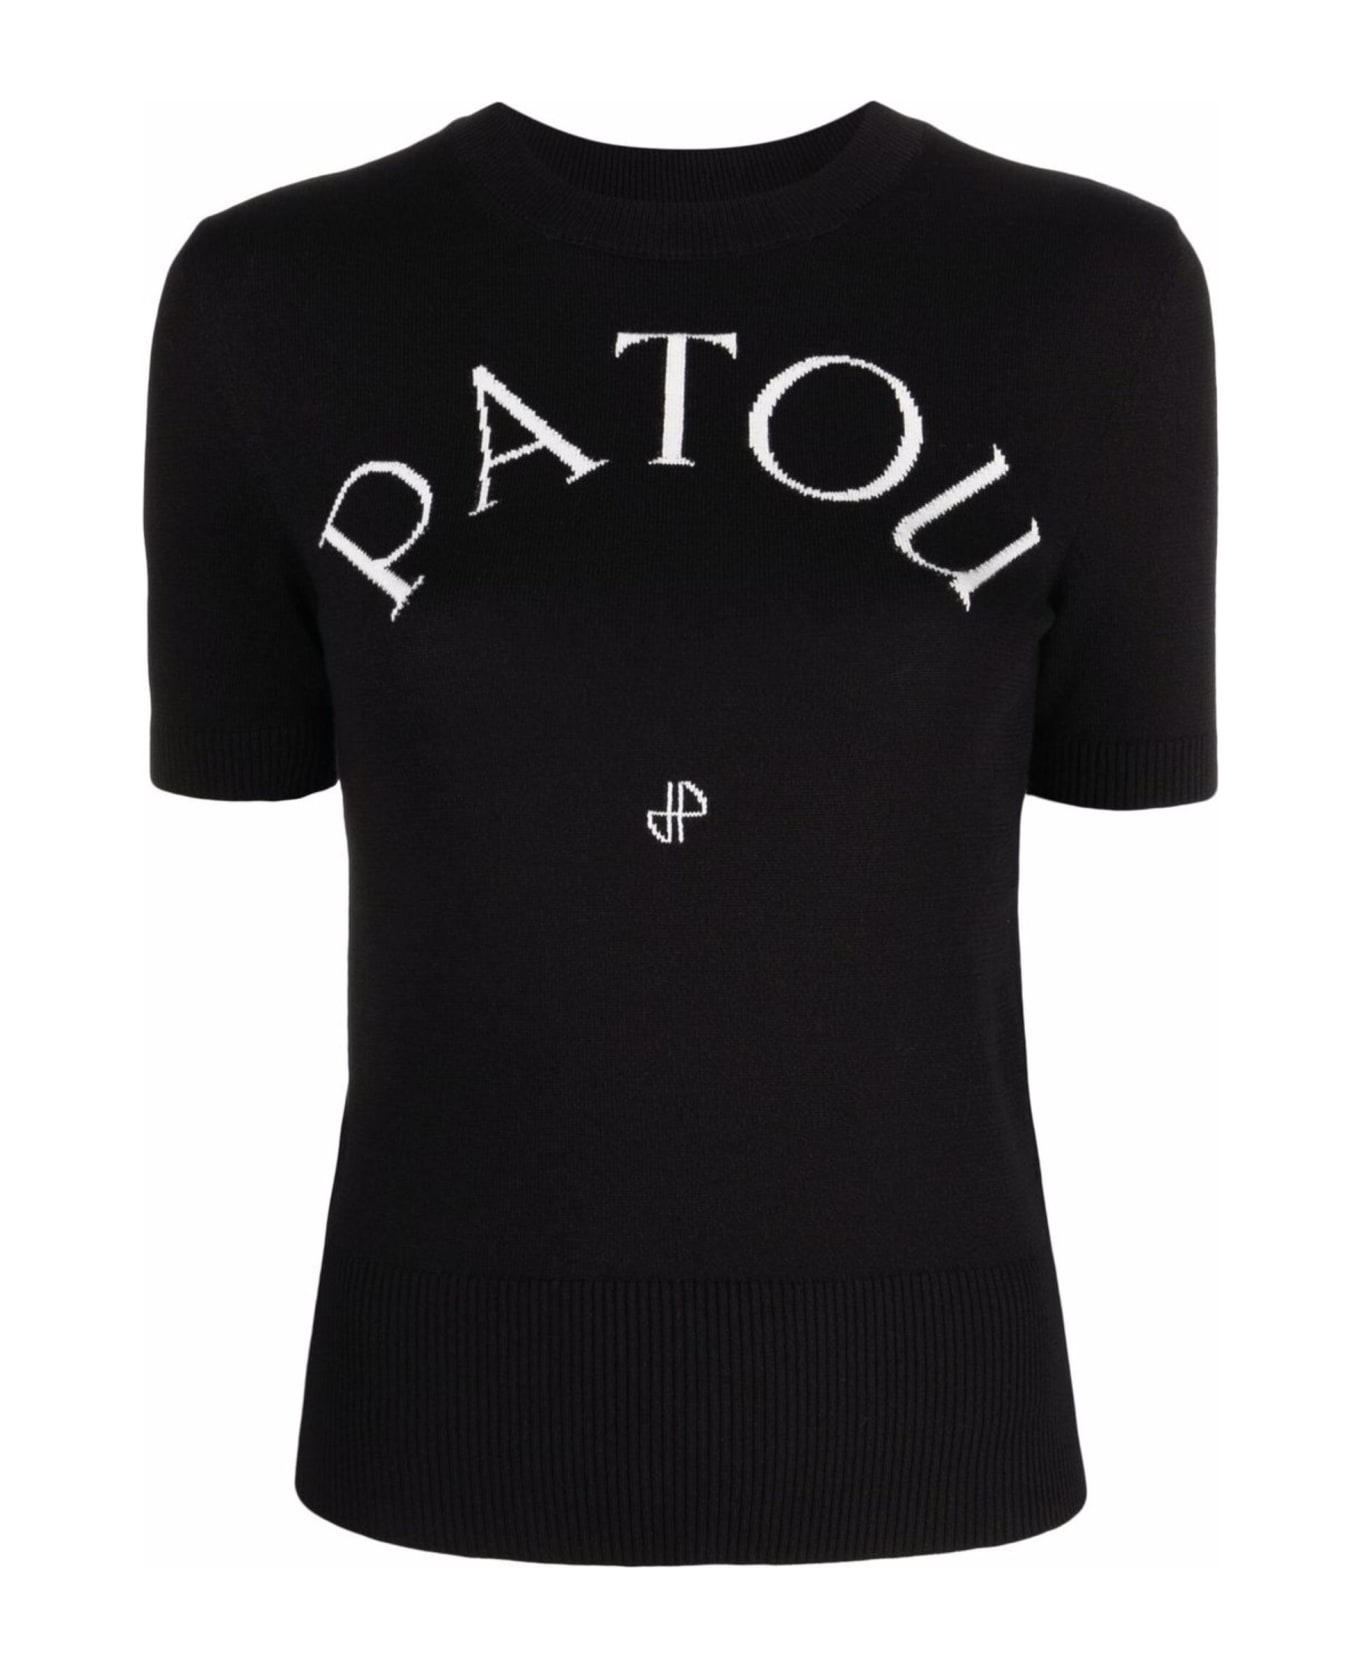 Patou Black Organic Cotton Blend Knit Top - Black